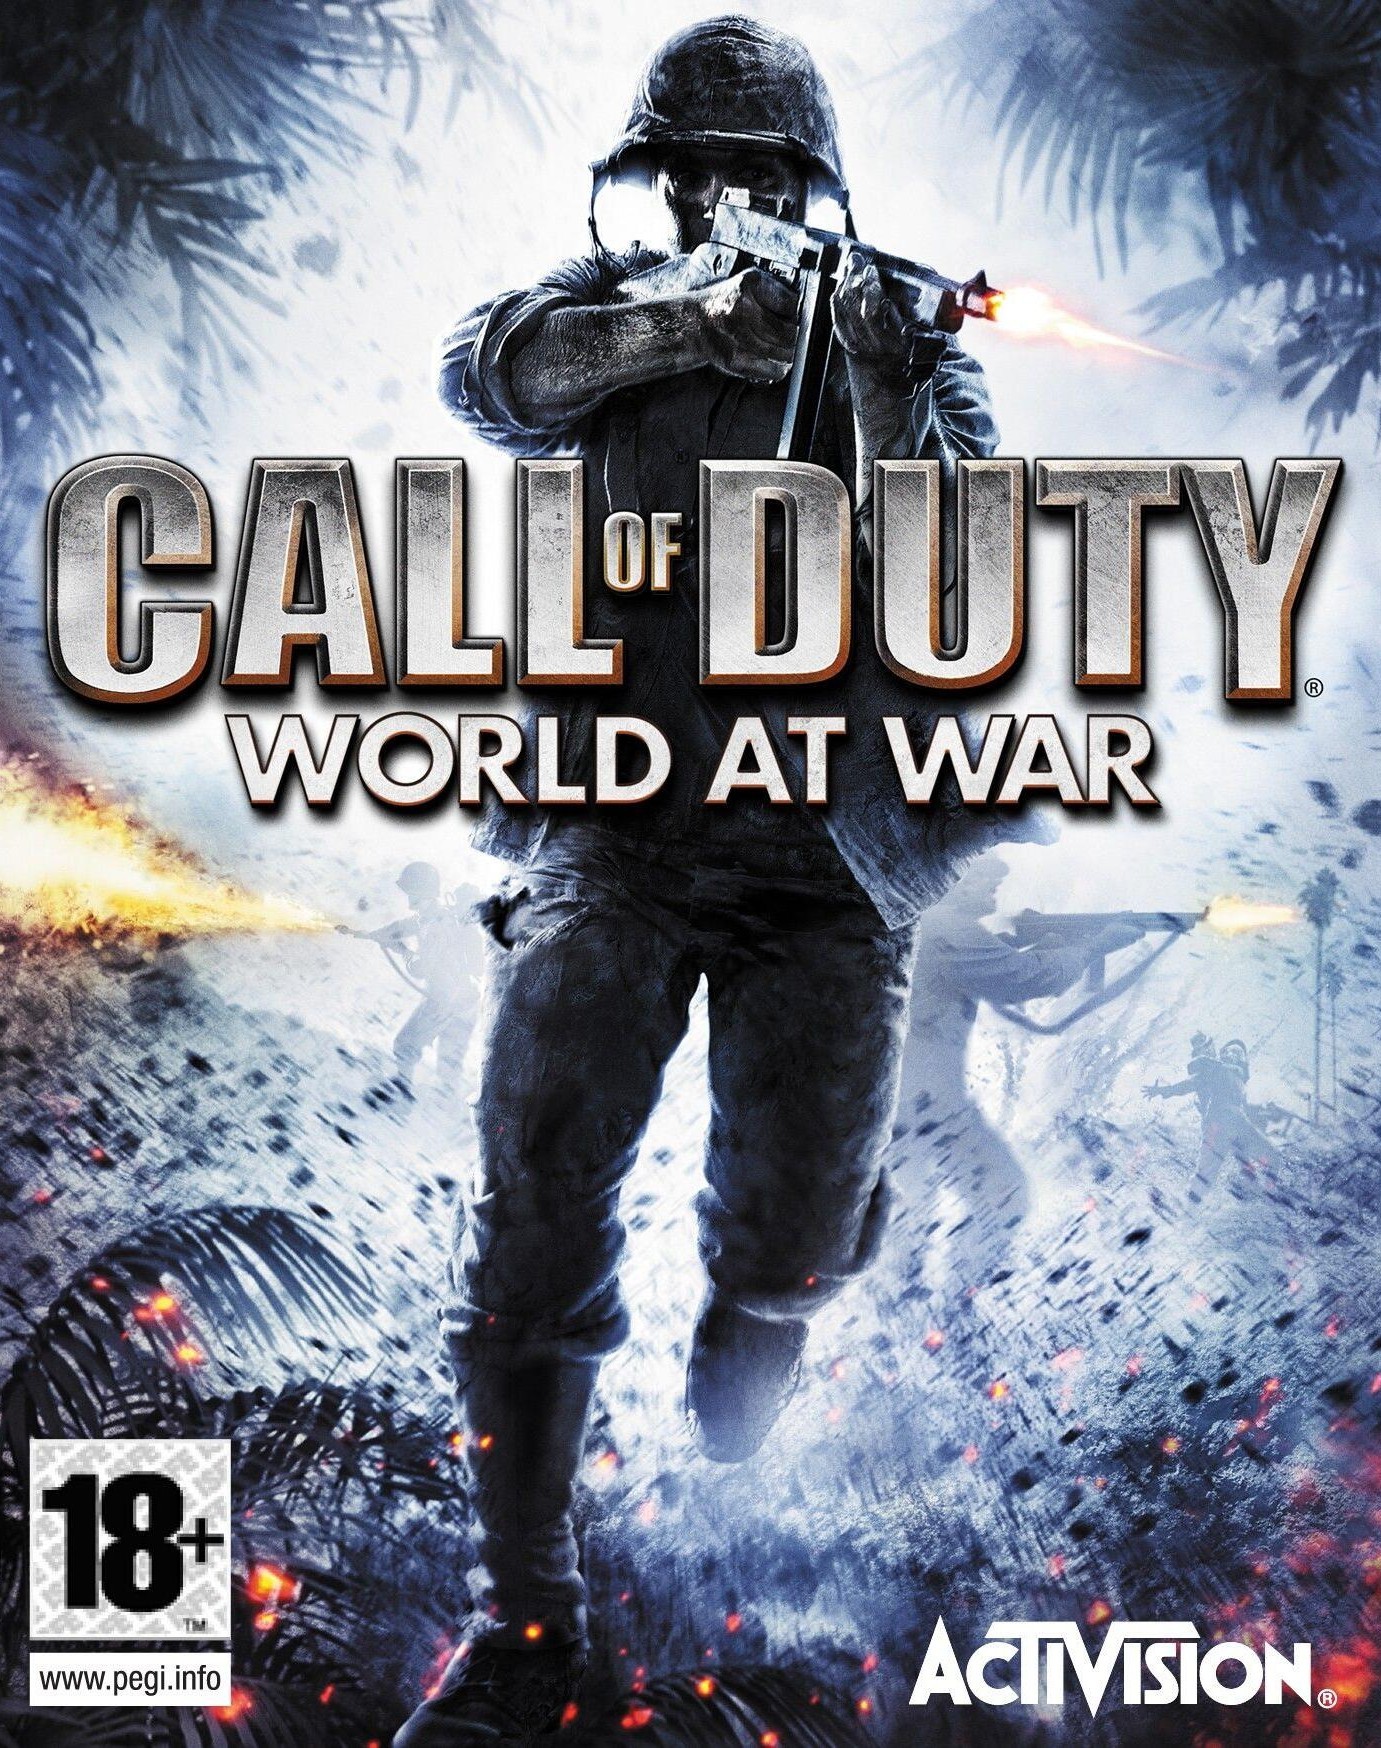 اکانت استیم بازی های Call Of Duty World At War + Black Ops II + چند بازی دیگر